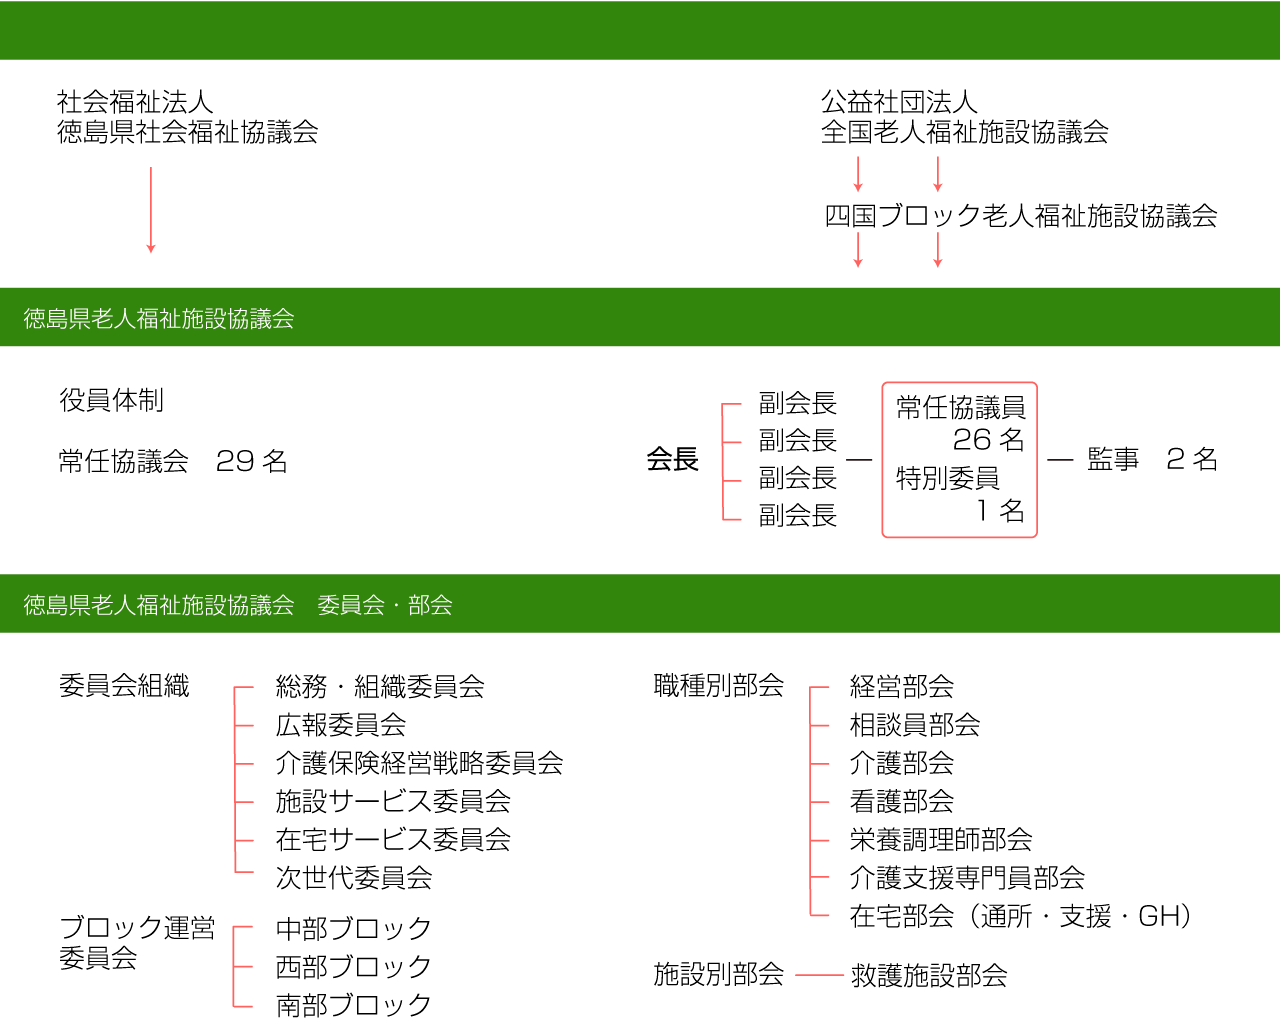 徳島県老人福祉施設協議会組織図1